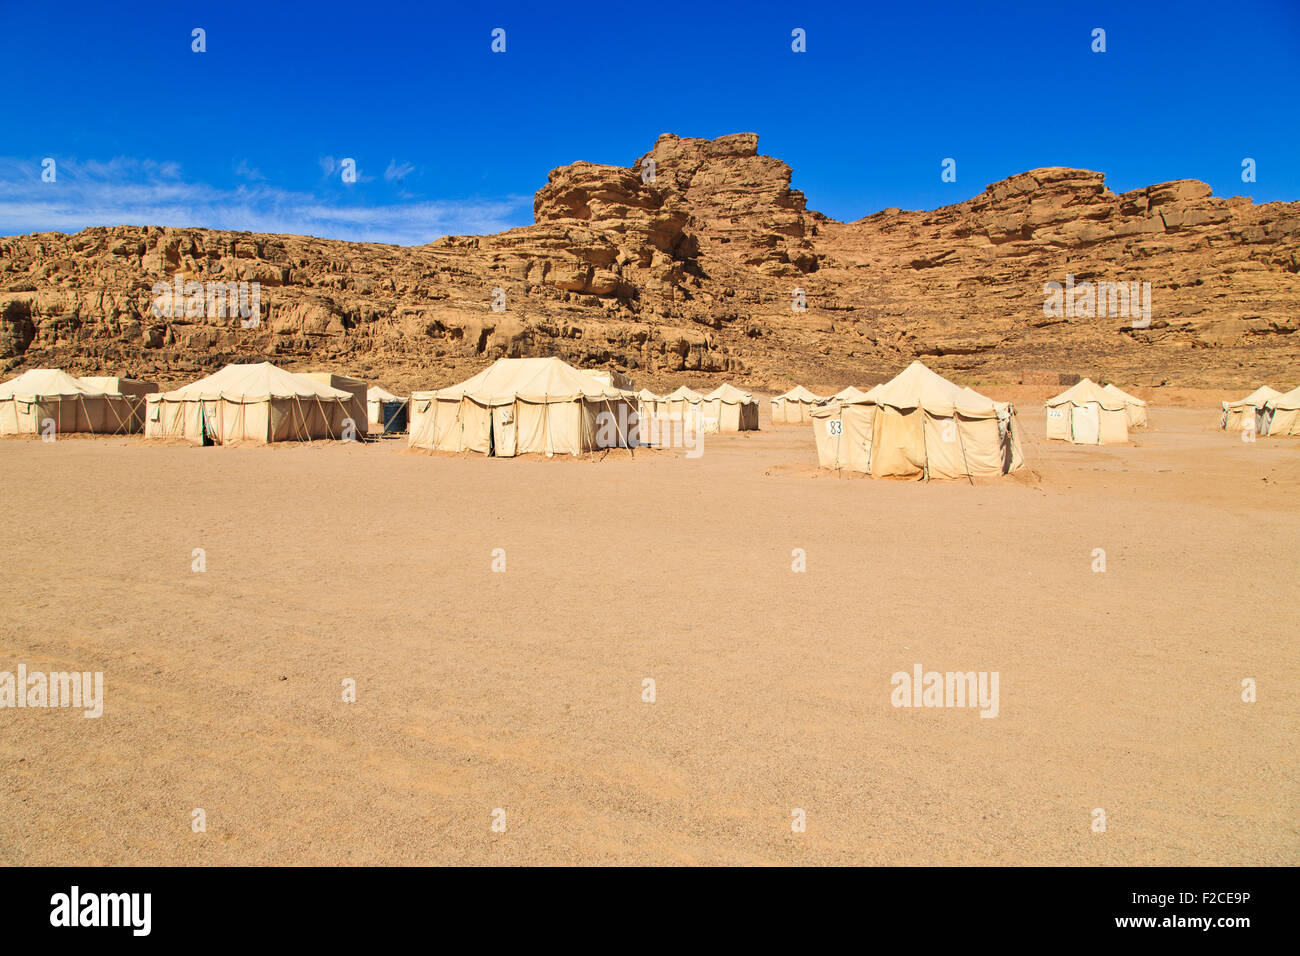 Camp in Wadi Rum Desert Stock Photo